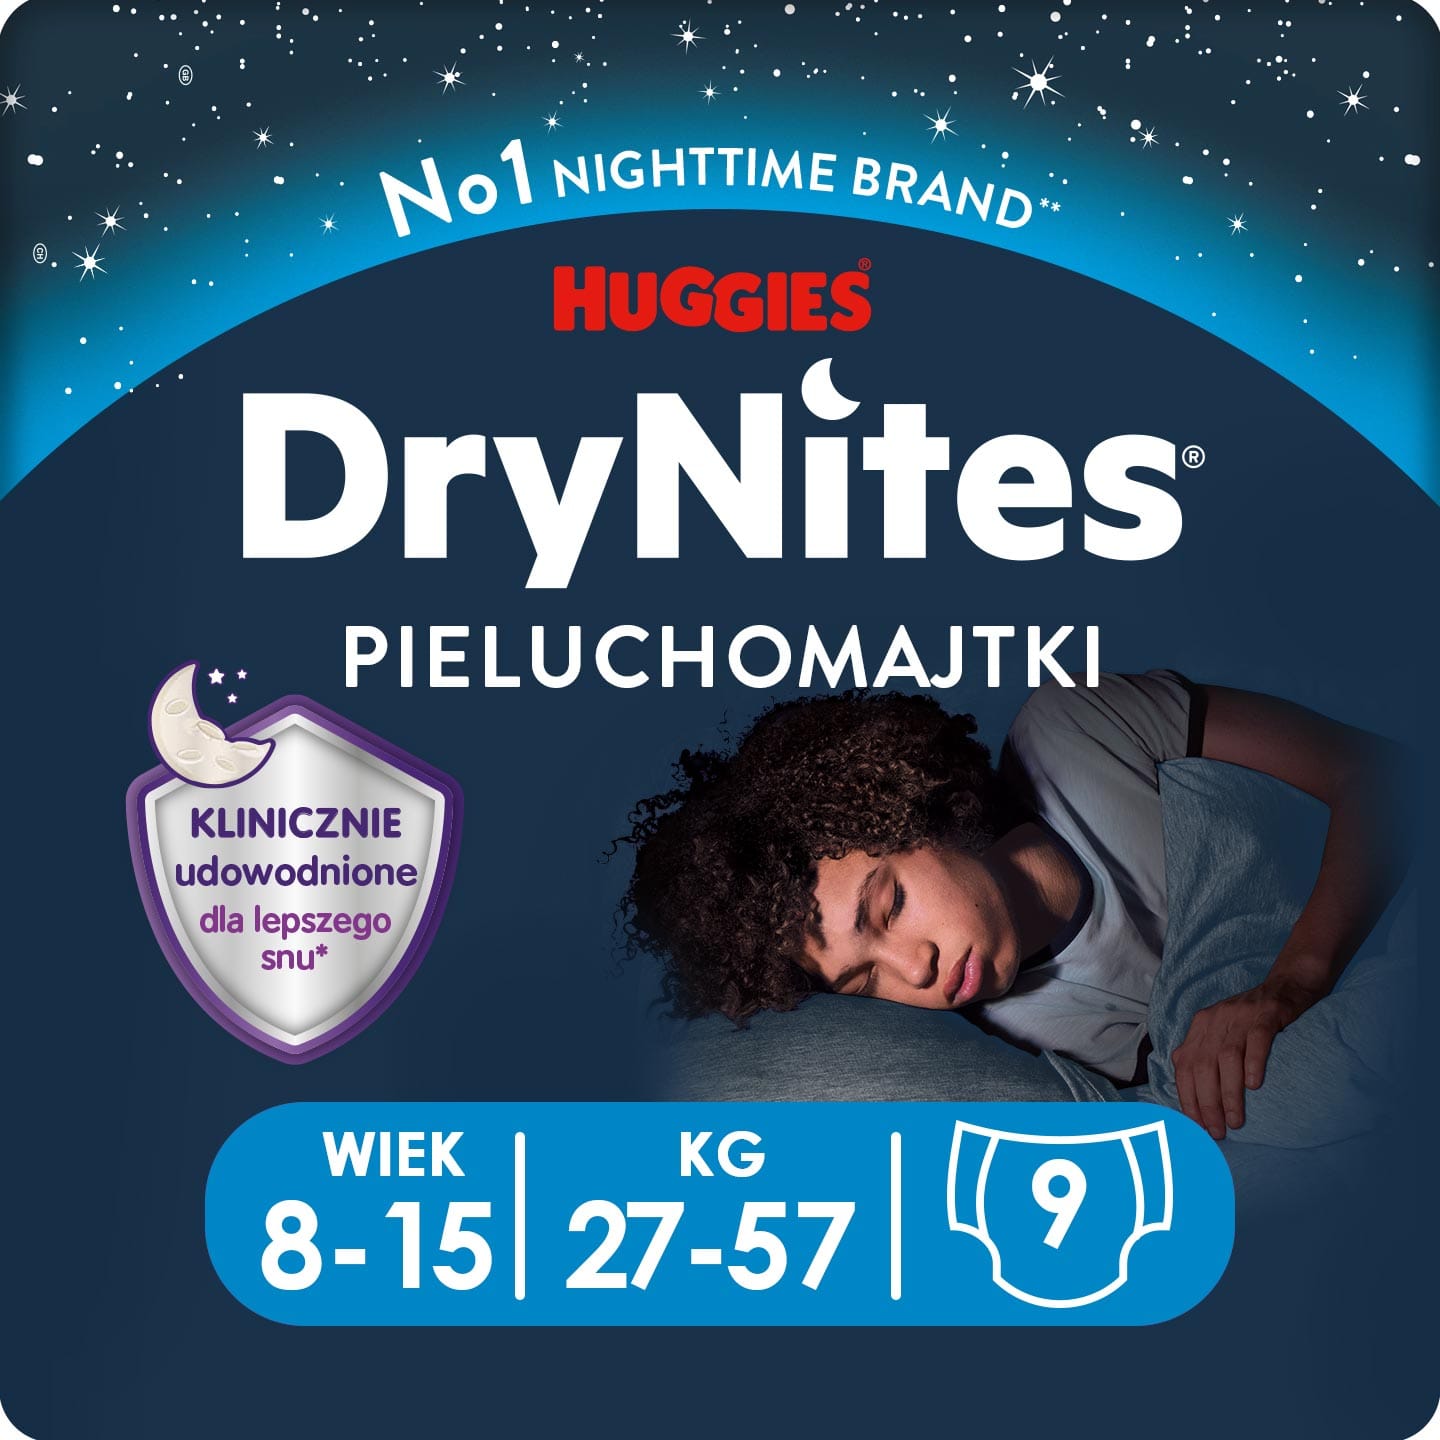 Produkt HUGGIES Pieluchomajtki Pieluchomajtki HUGGIES na noc dla chłopca DryNites Boy 8-15 lat (27-57kg) 9 szt 013827